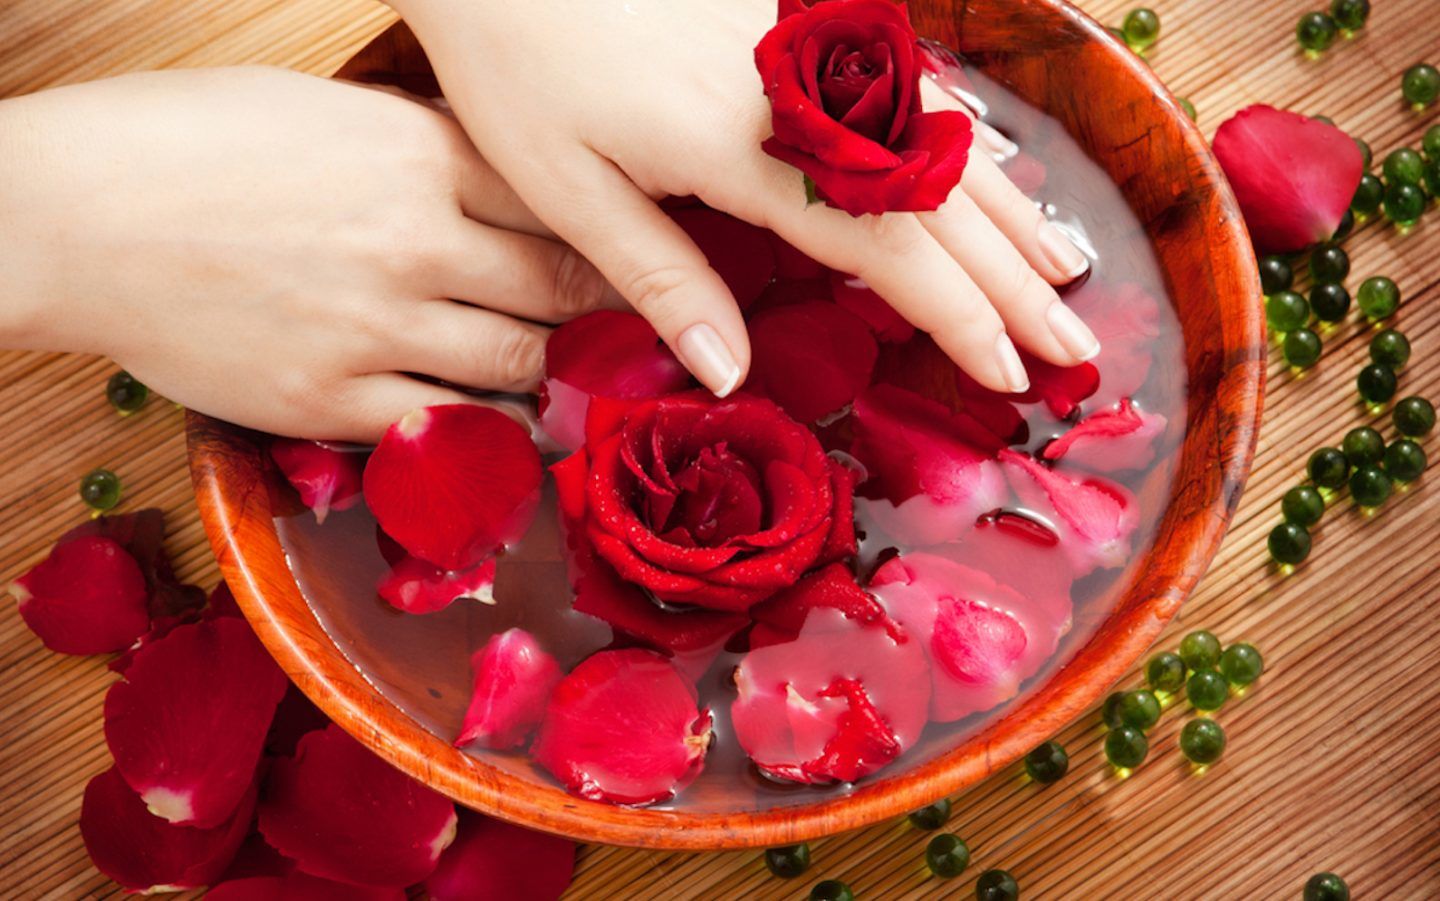 ما تفسير الورد الأحمر في المنام للمتزوجة؟